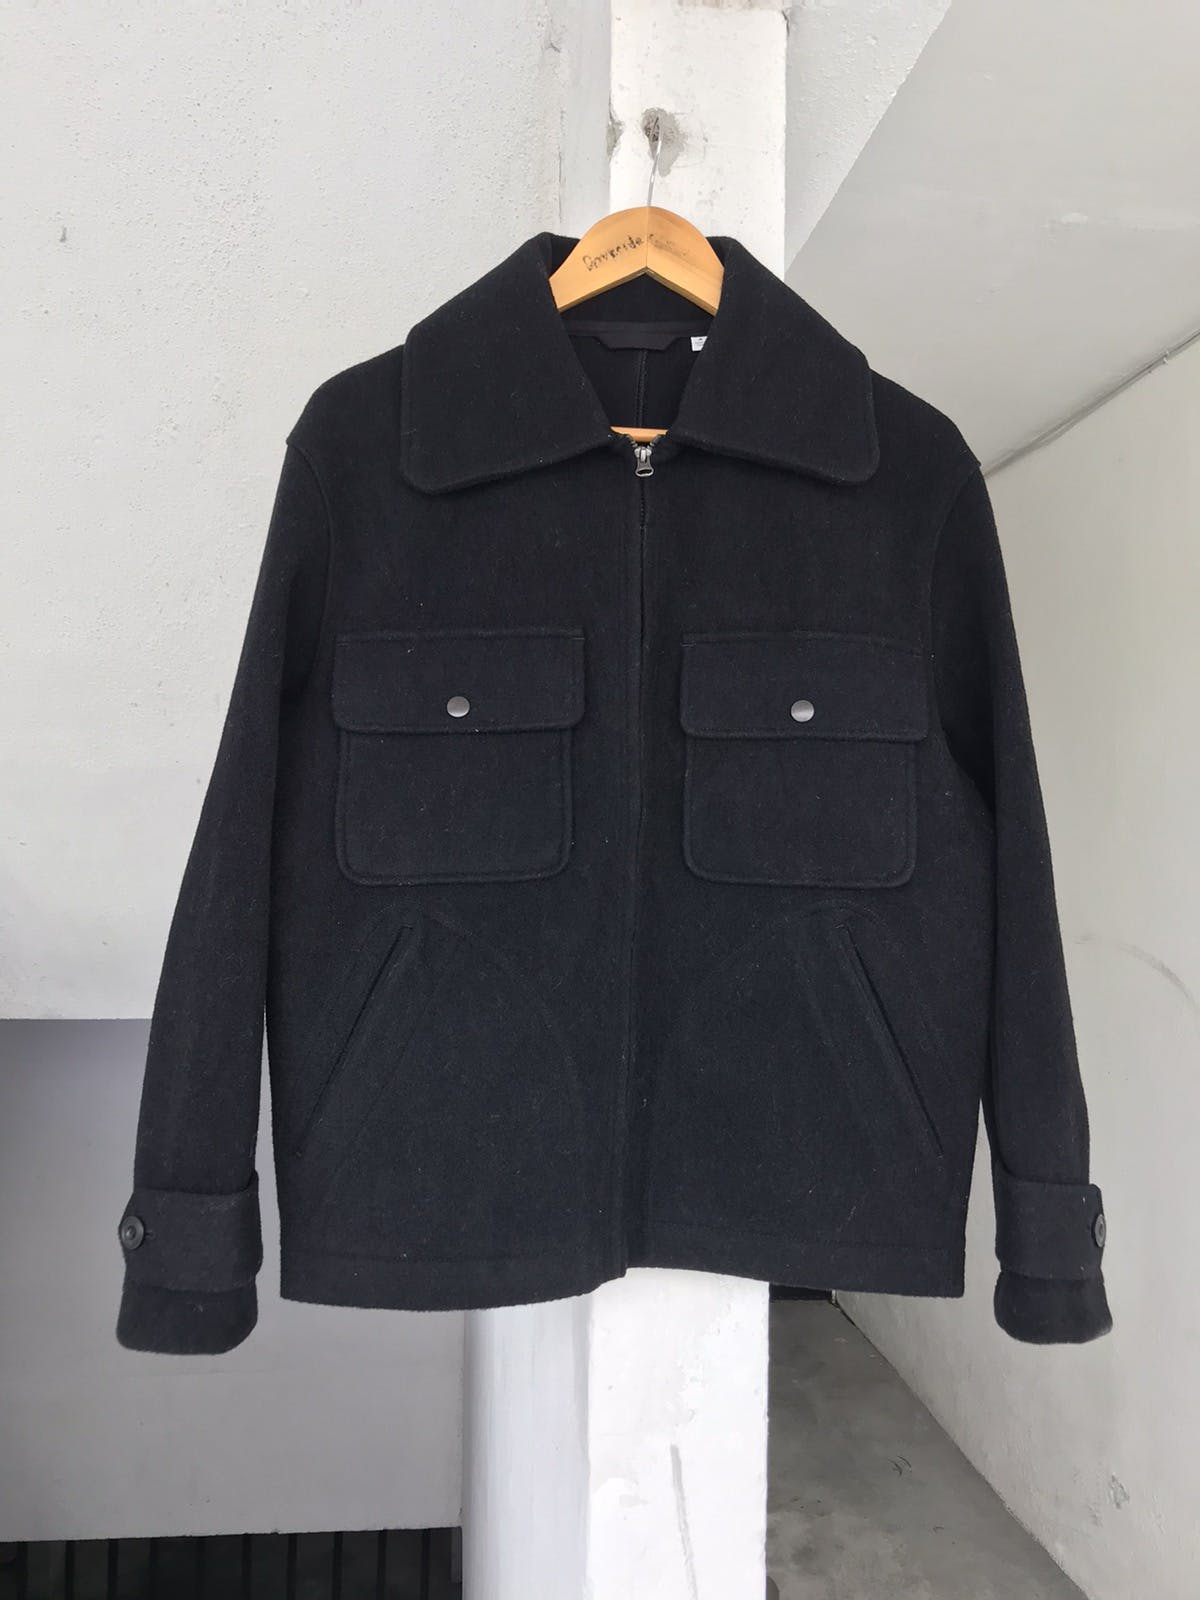 Christophe lemaire x ut Wool jacket - 4